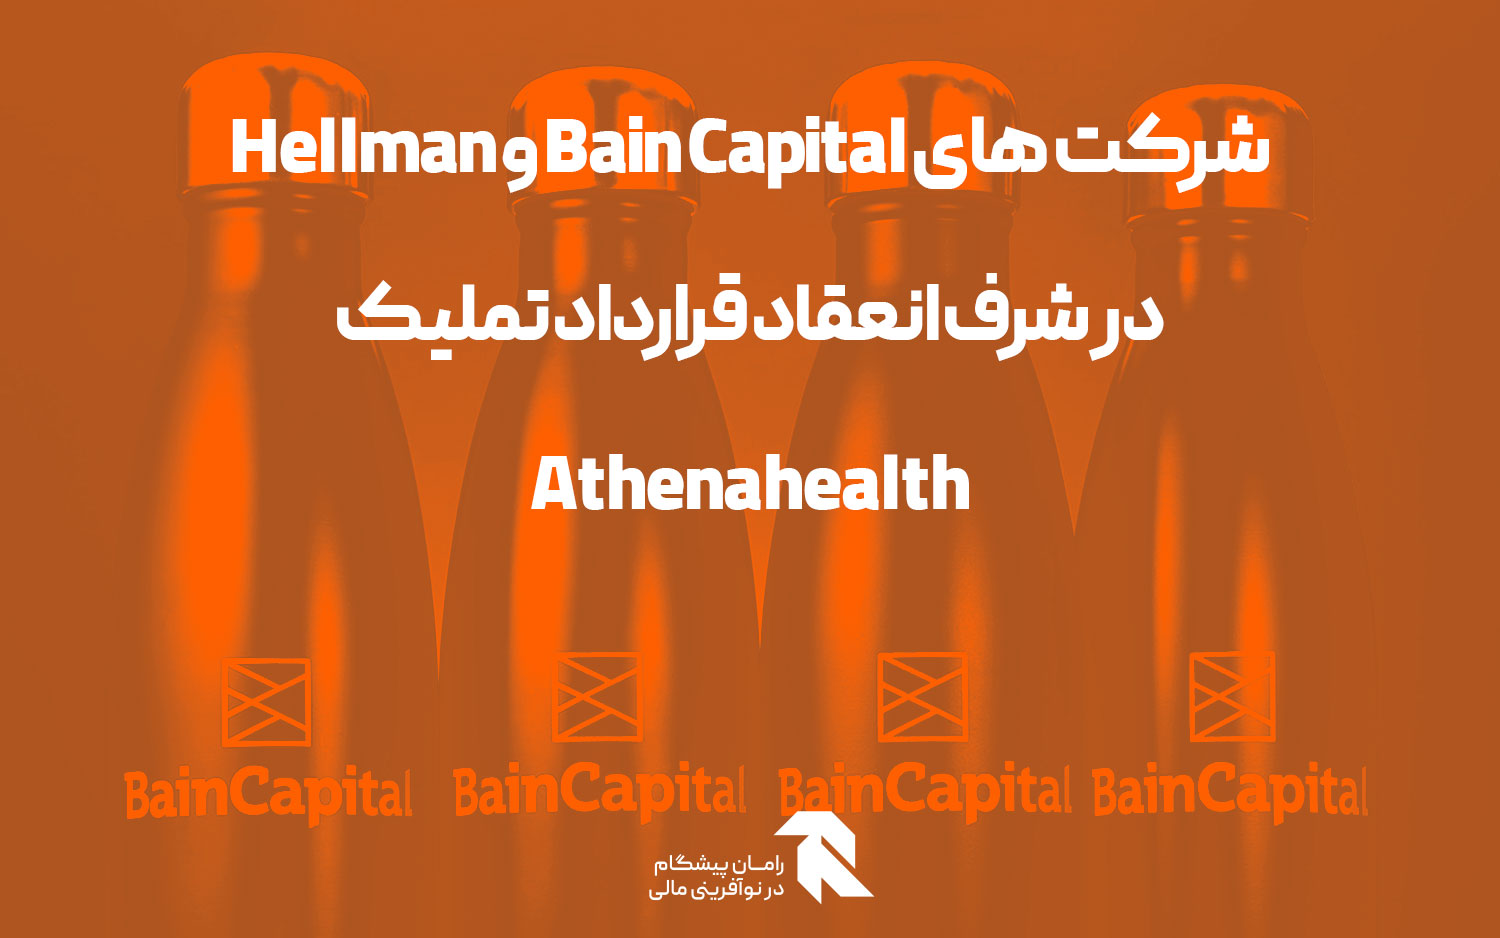 bain-capital-hellman-near-athenahealth-buyout-deal